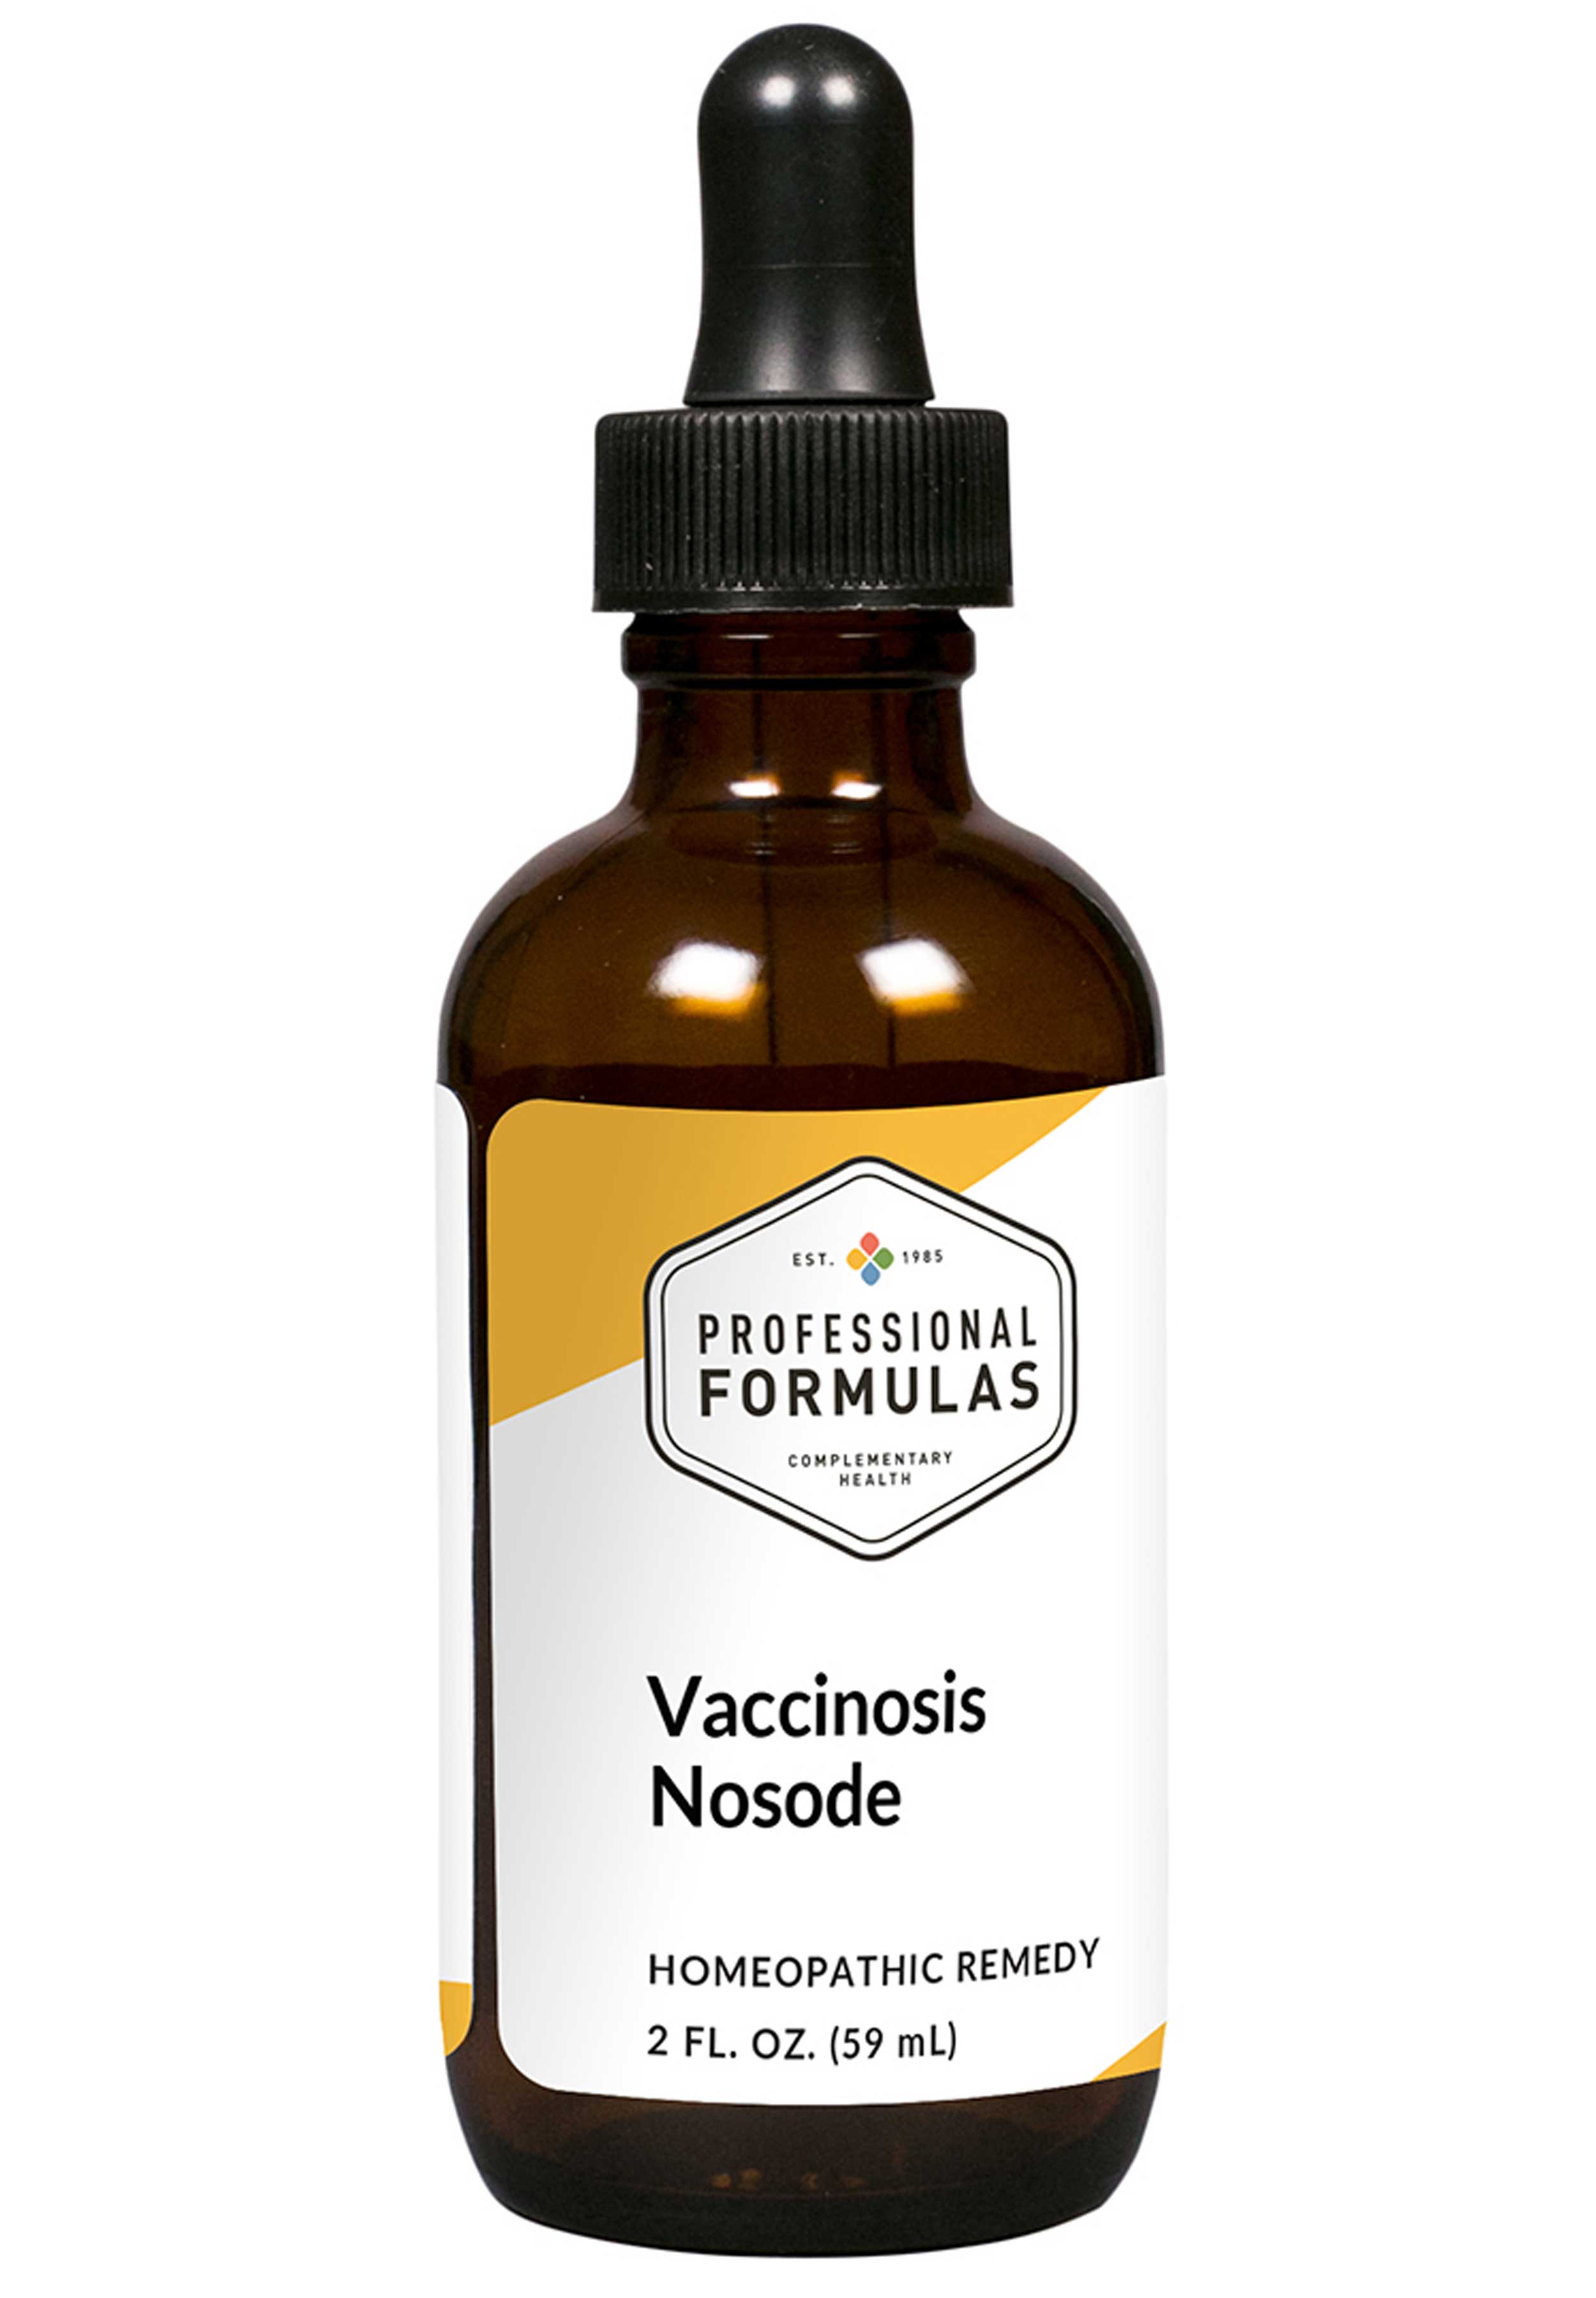 Professional Formulas Vaccinosis Nosode